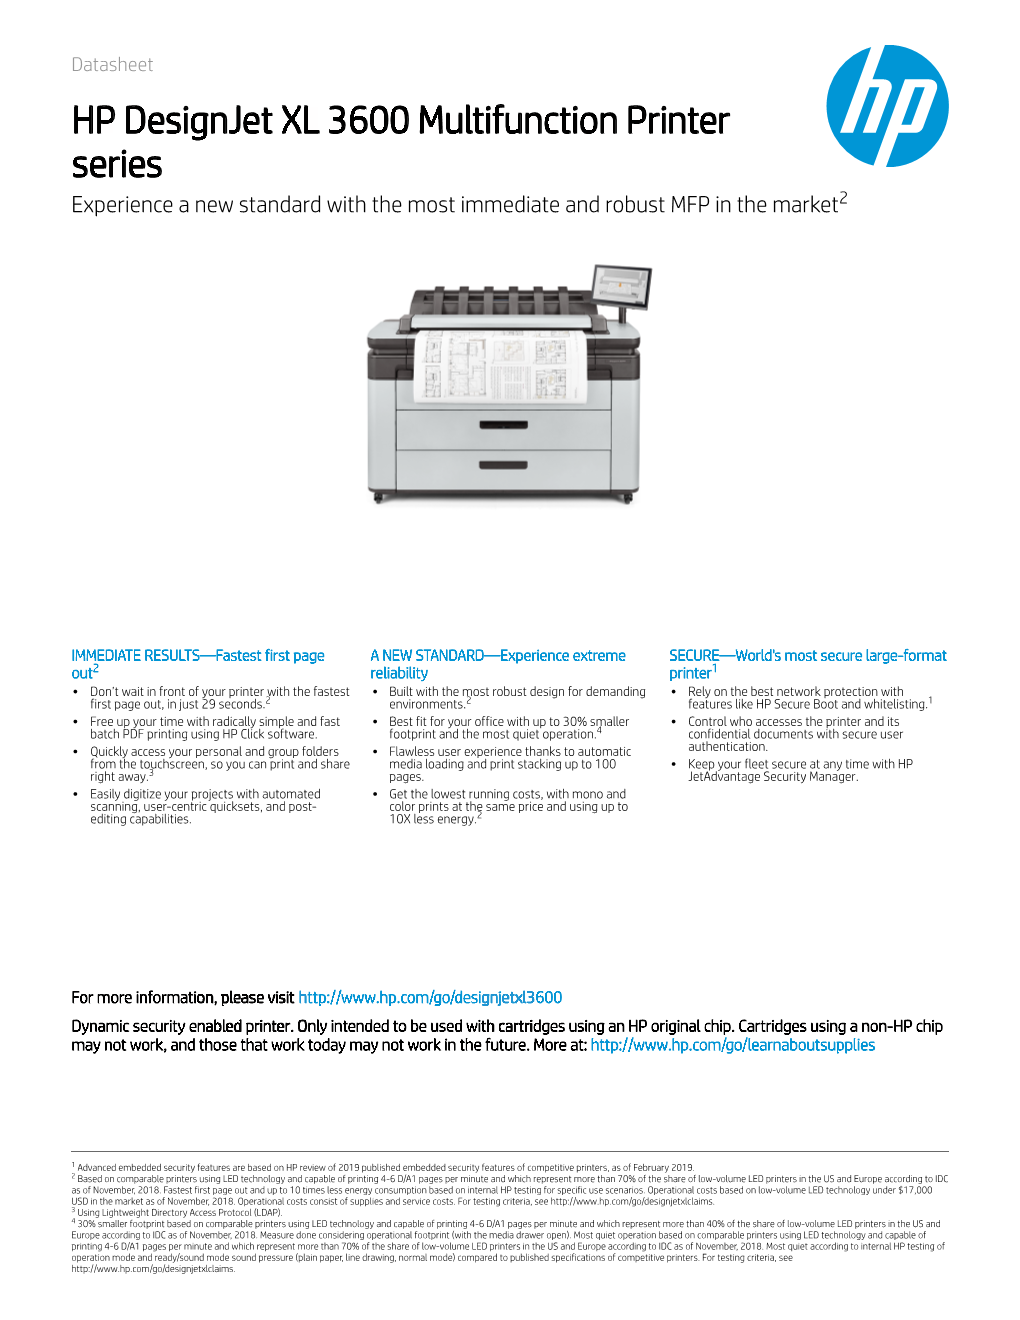 HP Designjet XL 3600 Multifunction Printer HP Designjet XL 3600